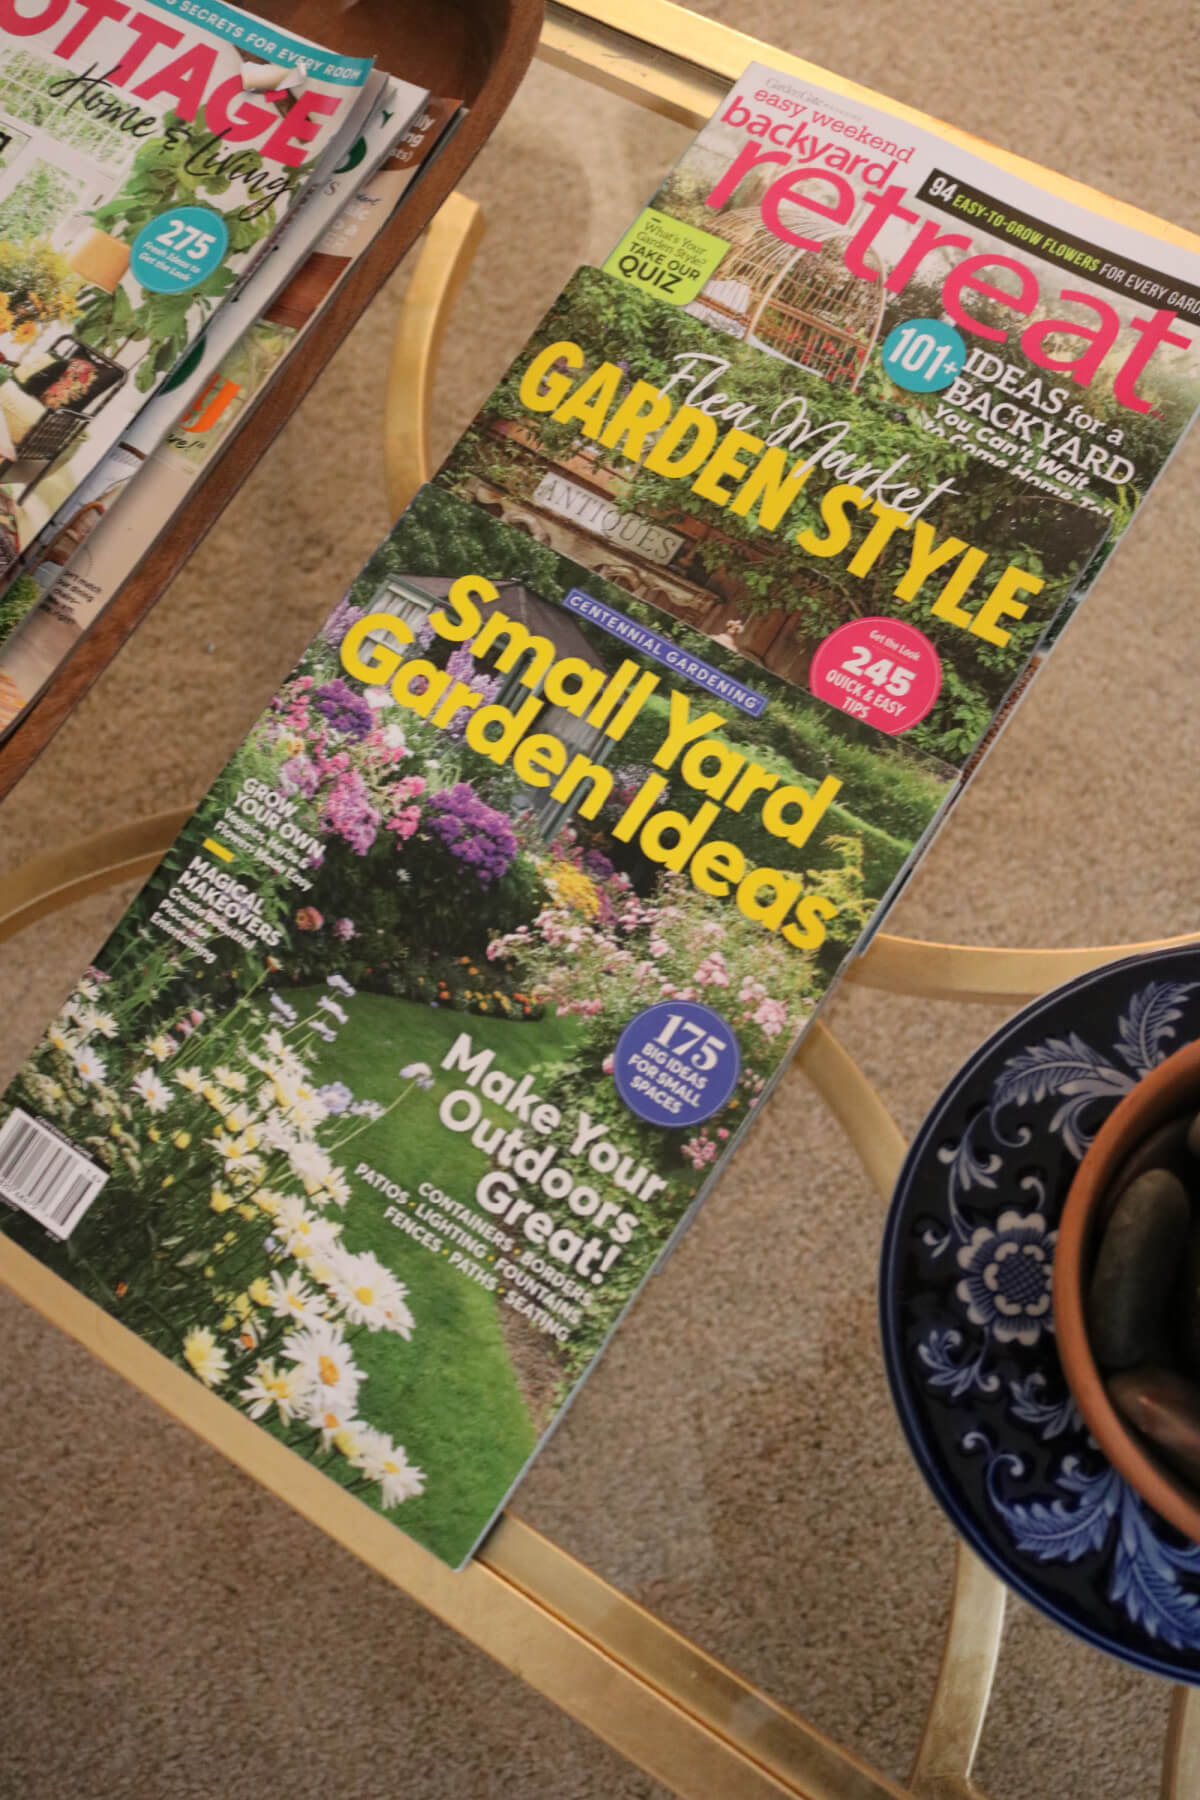 Garden Magazines & Bathtub Chairs